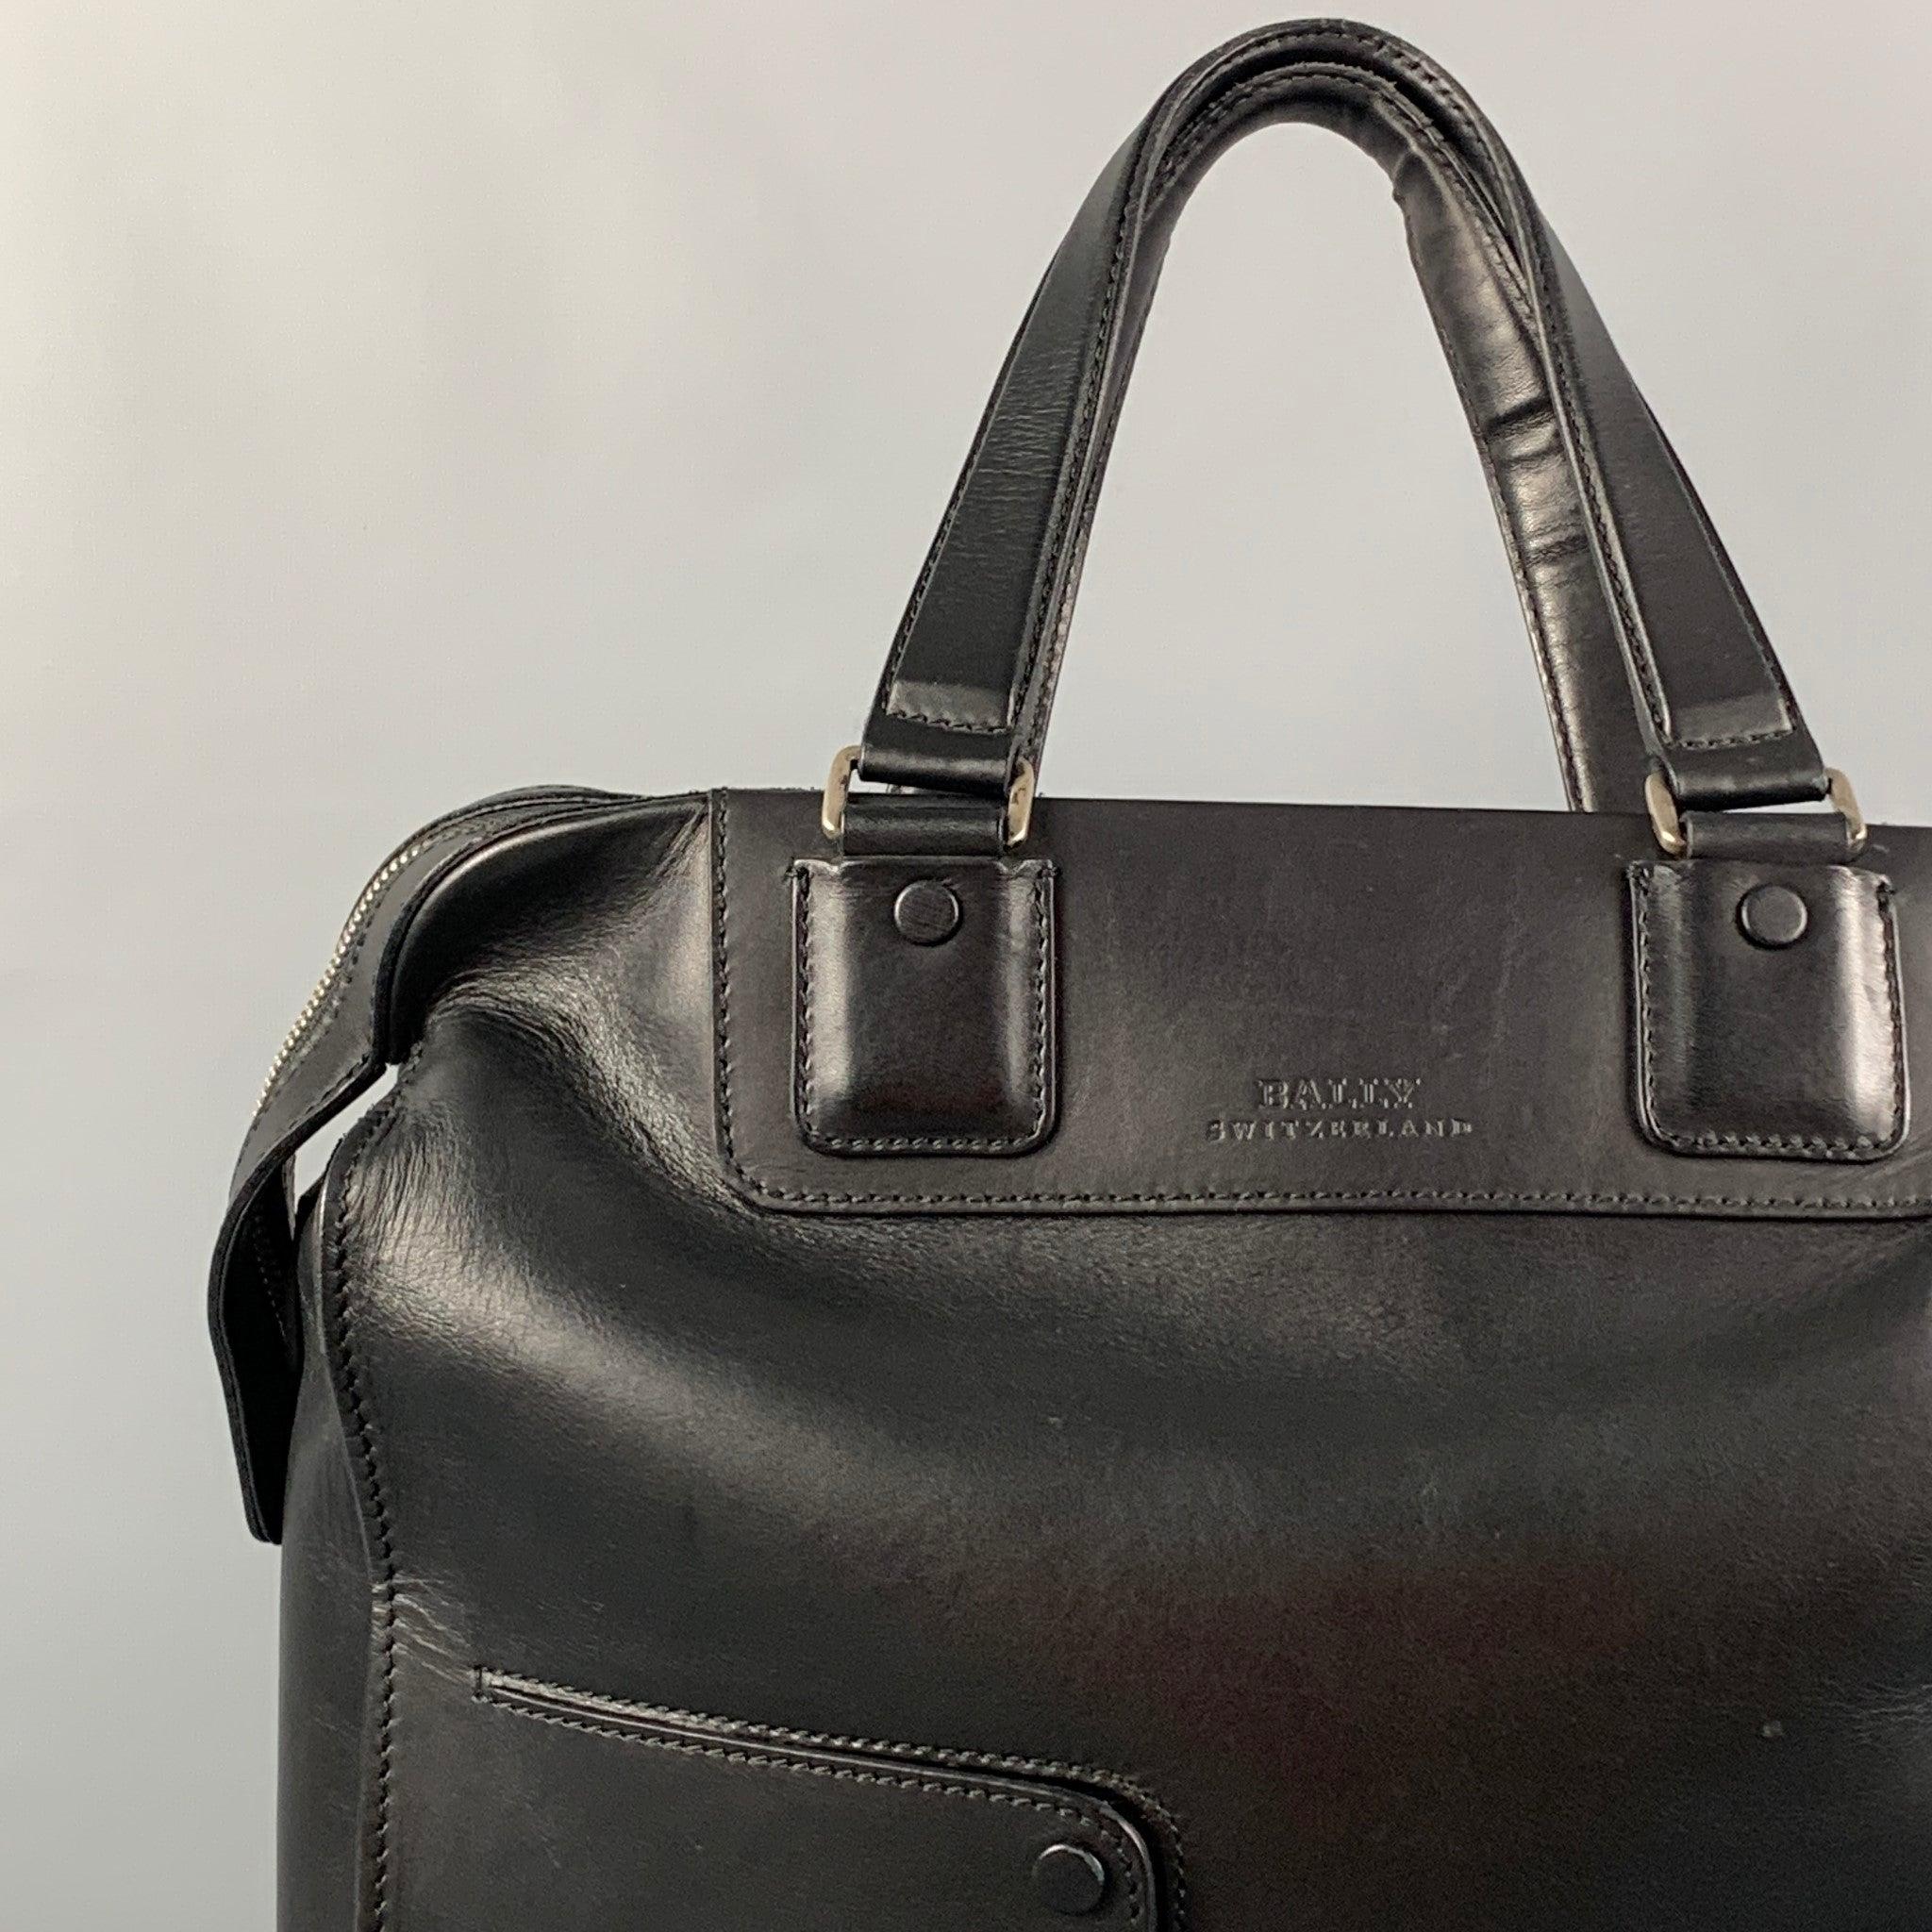 BALLY Tasche aus schwarzem Leder im Tote-Stil, mit Henkeln an der Oberseite, Fronttaschen, silberfarbenen Beschlägen und einem Reißverschluss.
Sehr gut
Gebrauchtes Zustand. Geringe Abnutzung. So wie es ist.  

Abmessungen: 
  Länge:
14,25 Zoll